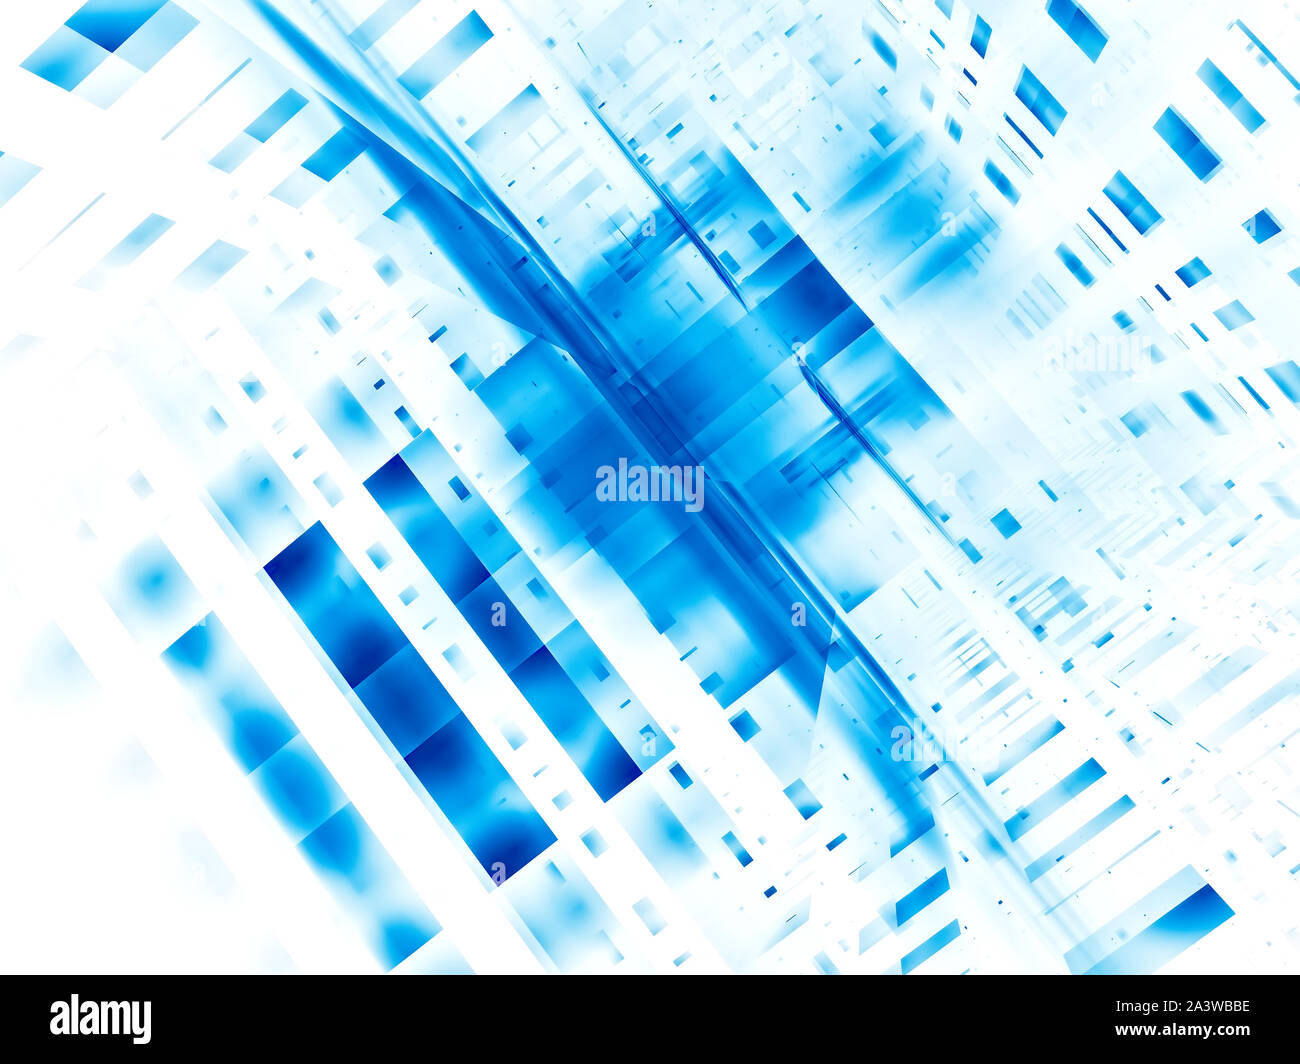 Résumé fond blanc et bleu - perspective création numérique 3d illustration Banque D'Images